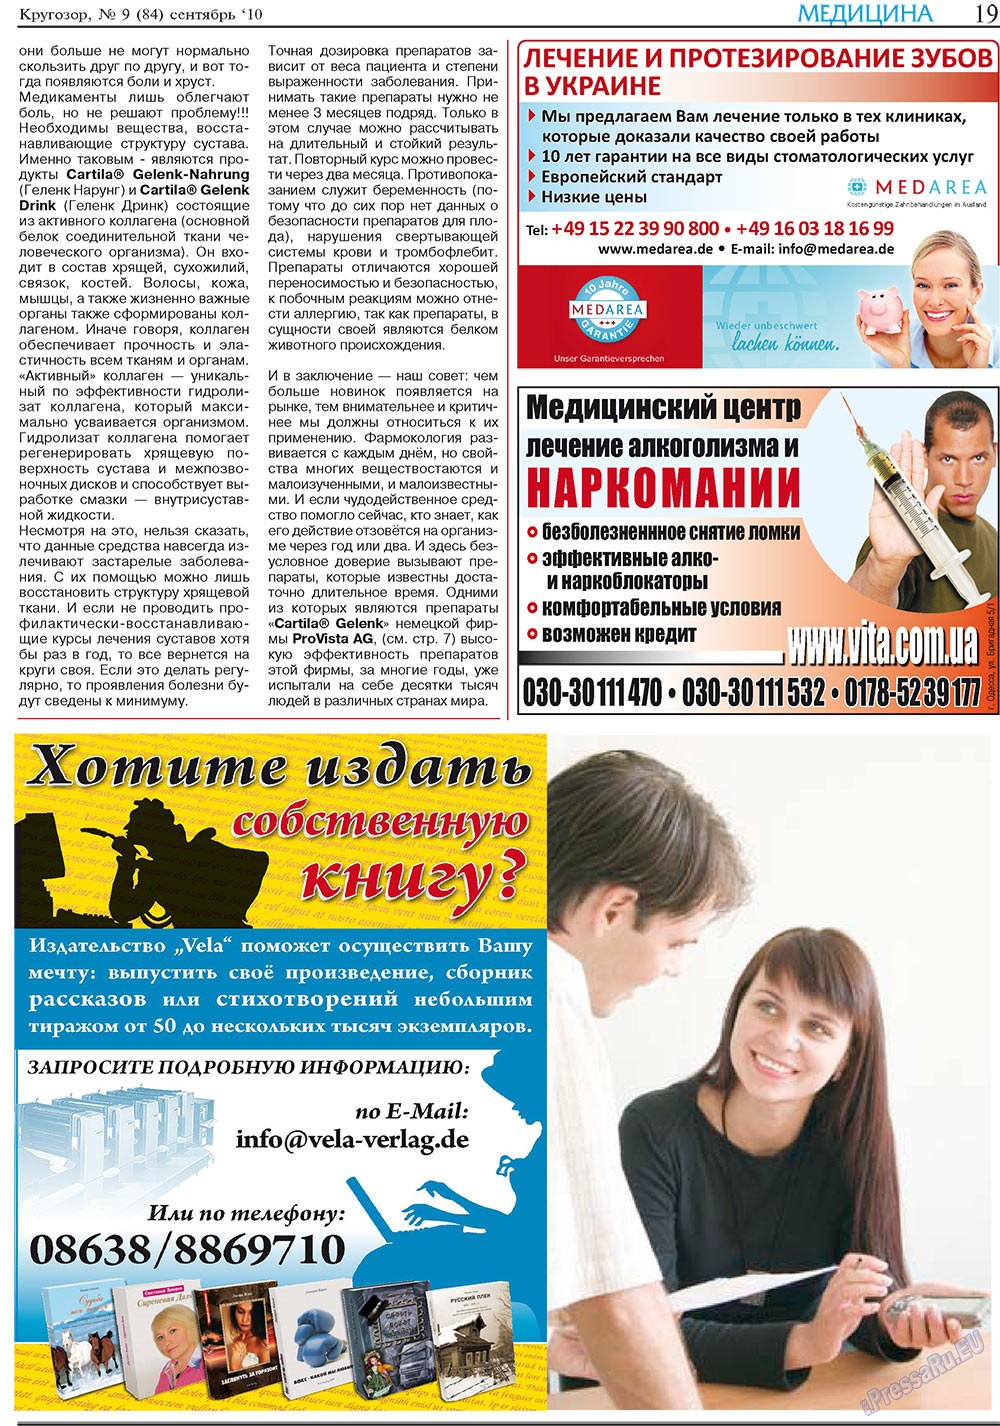 Кругозор плюс!, газета. 2010 №9 стр.43